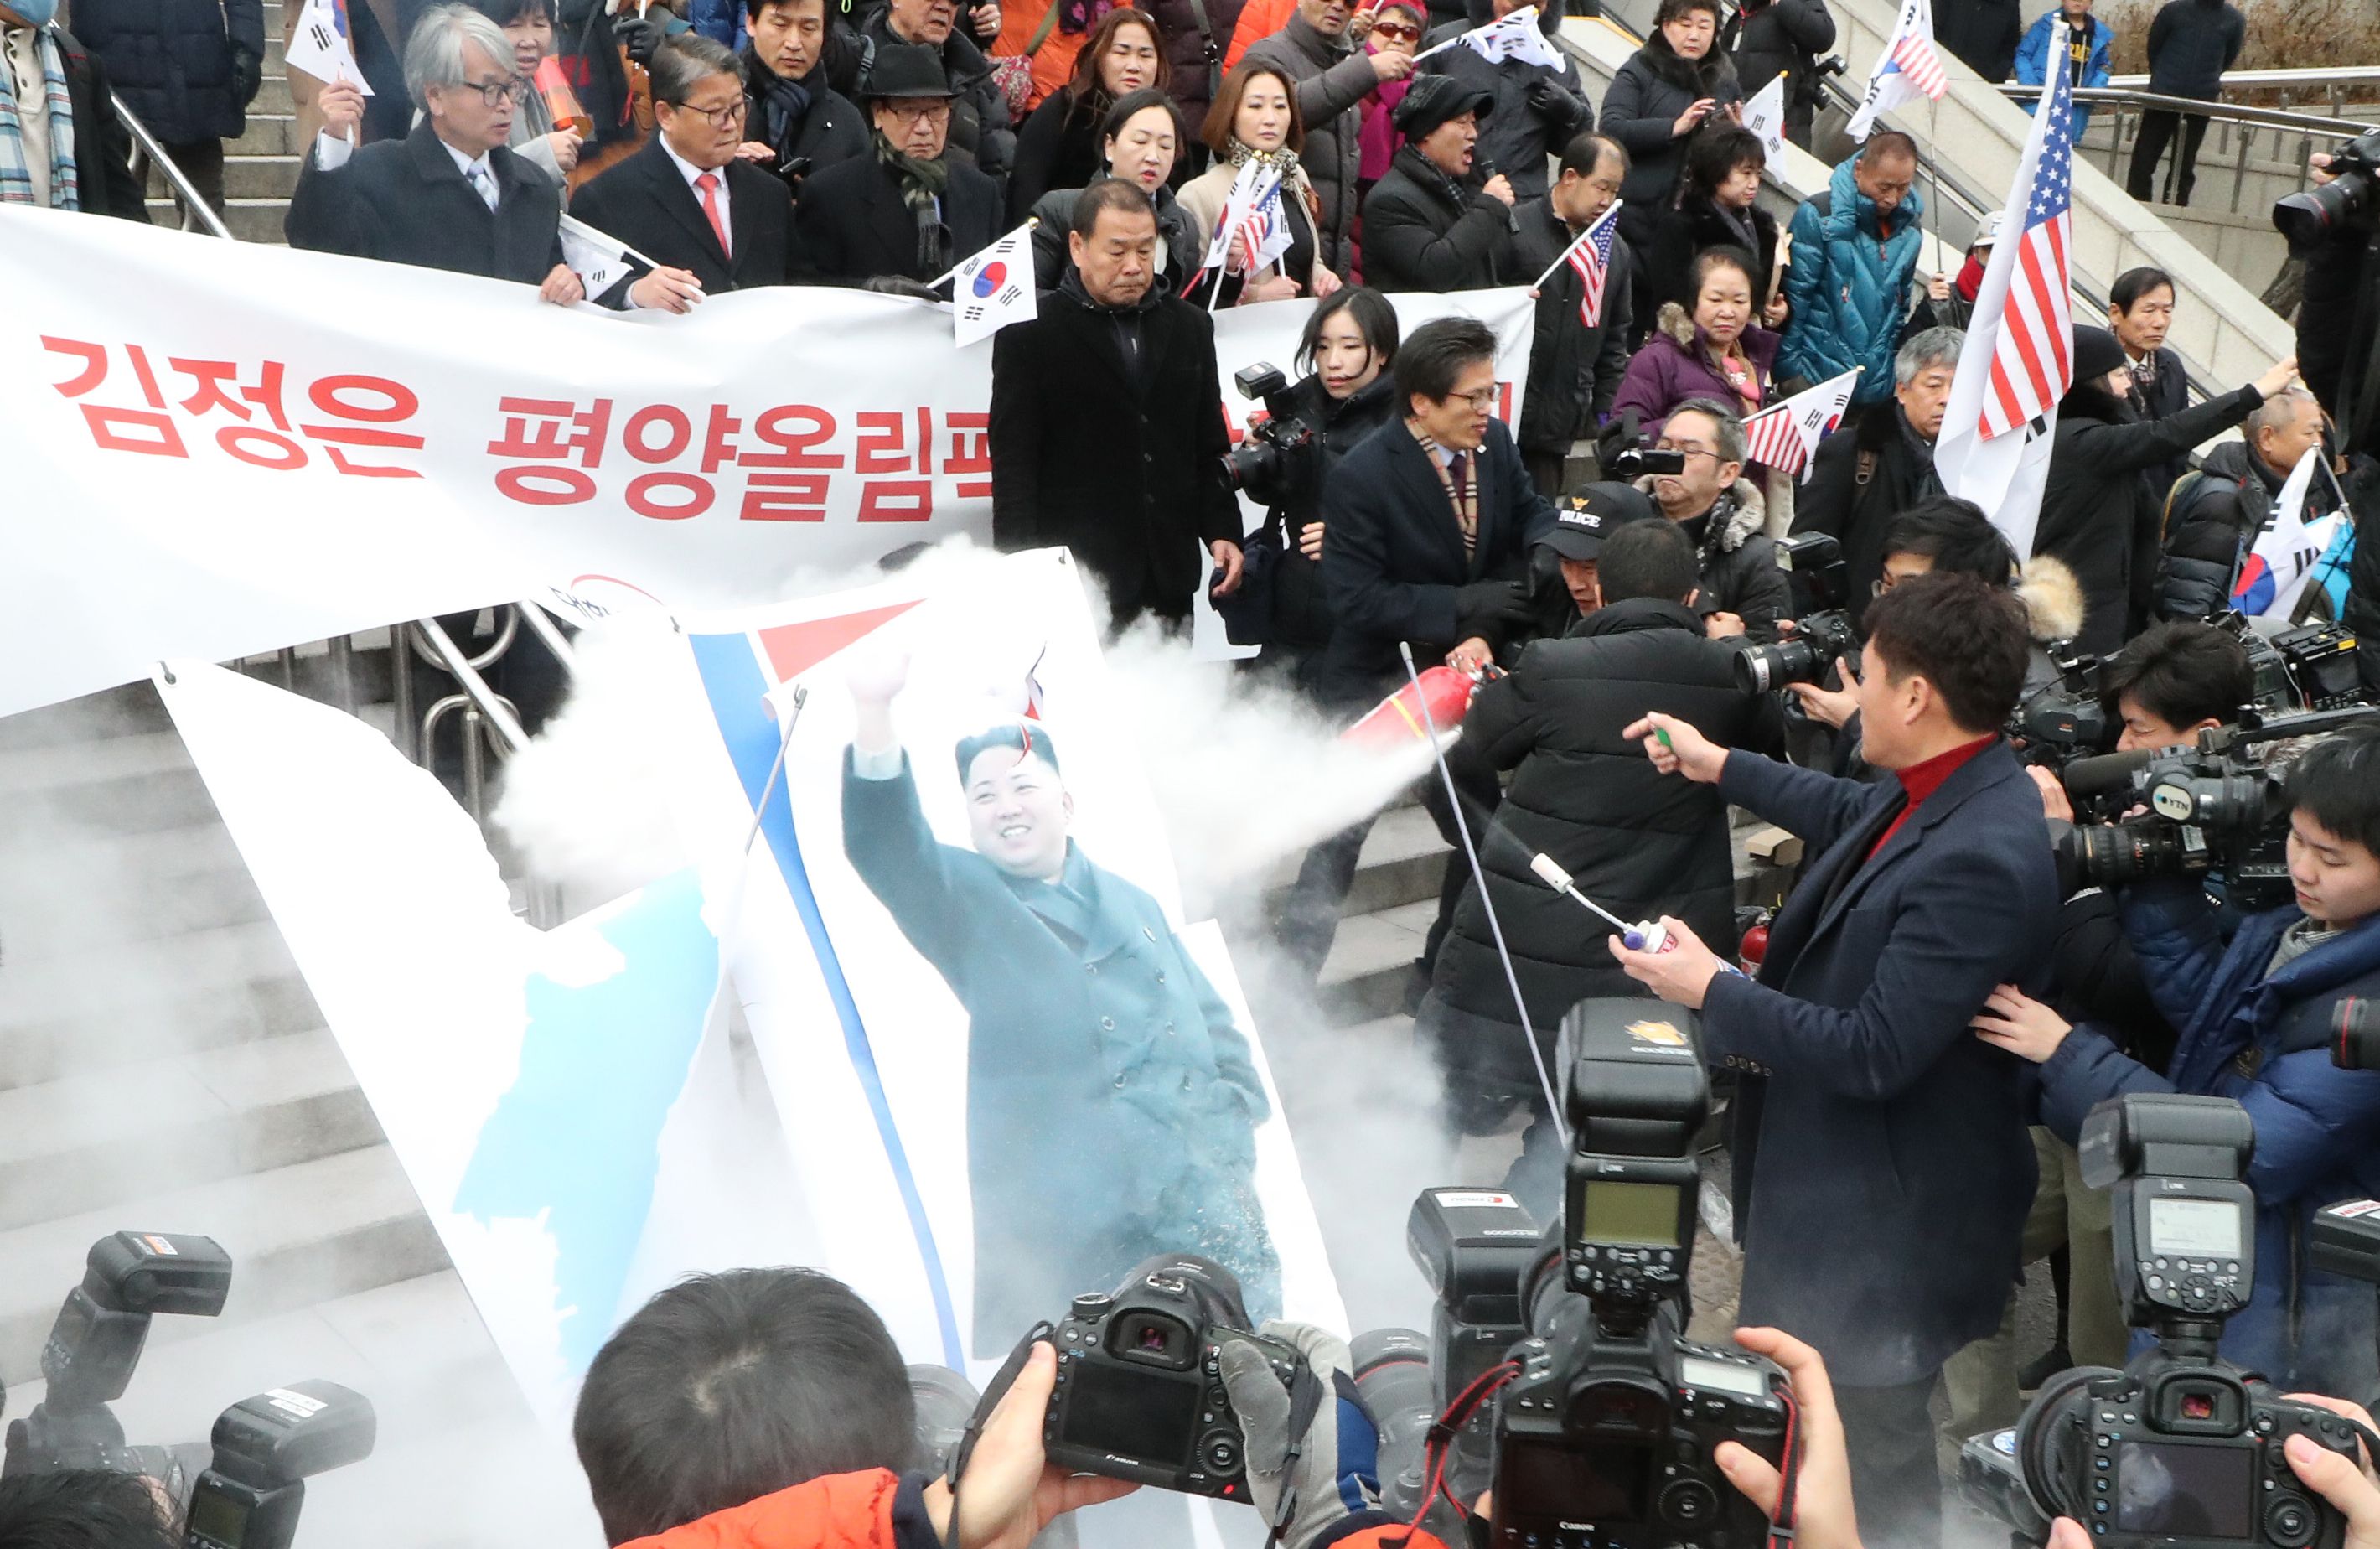 جانب من المظاهرات فى سول ضد زعيم كوريا الشمالية